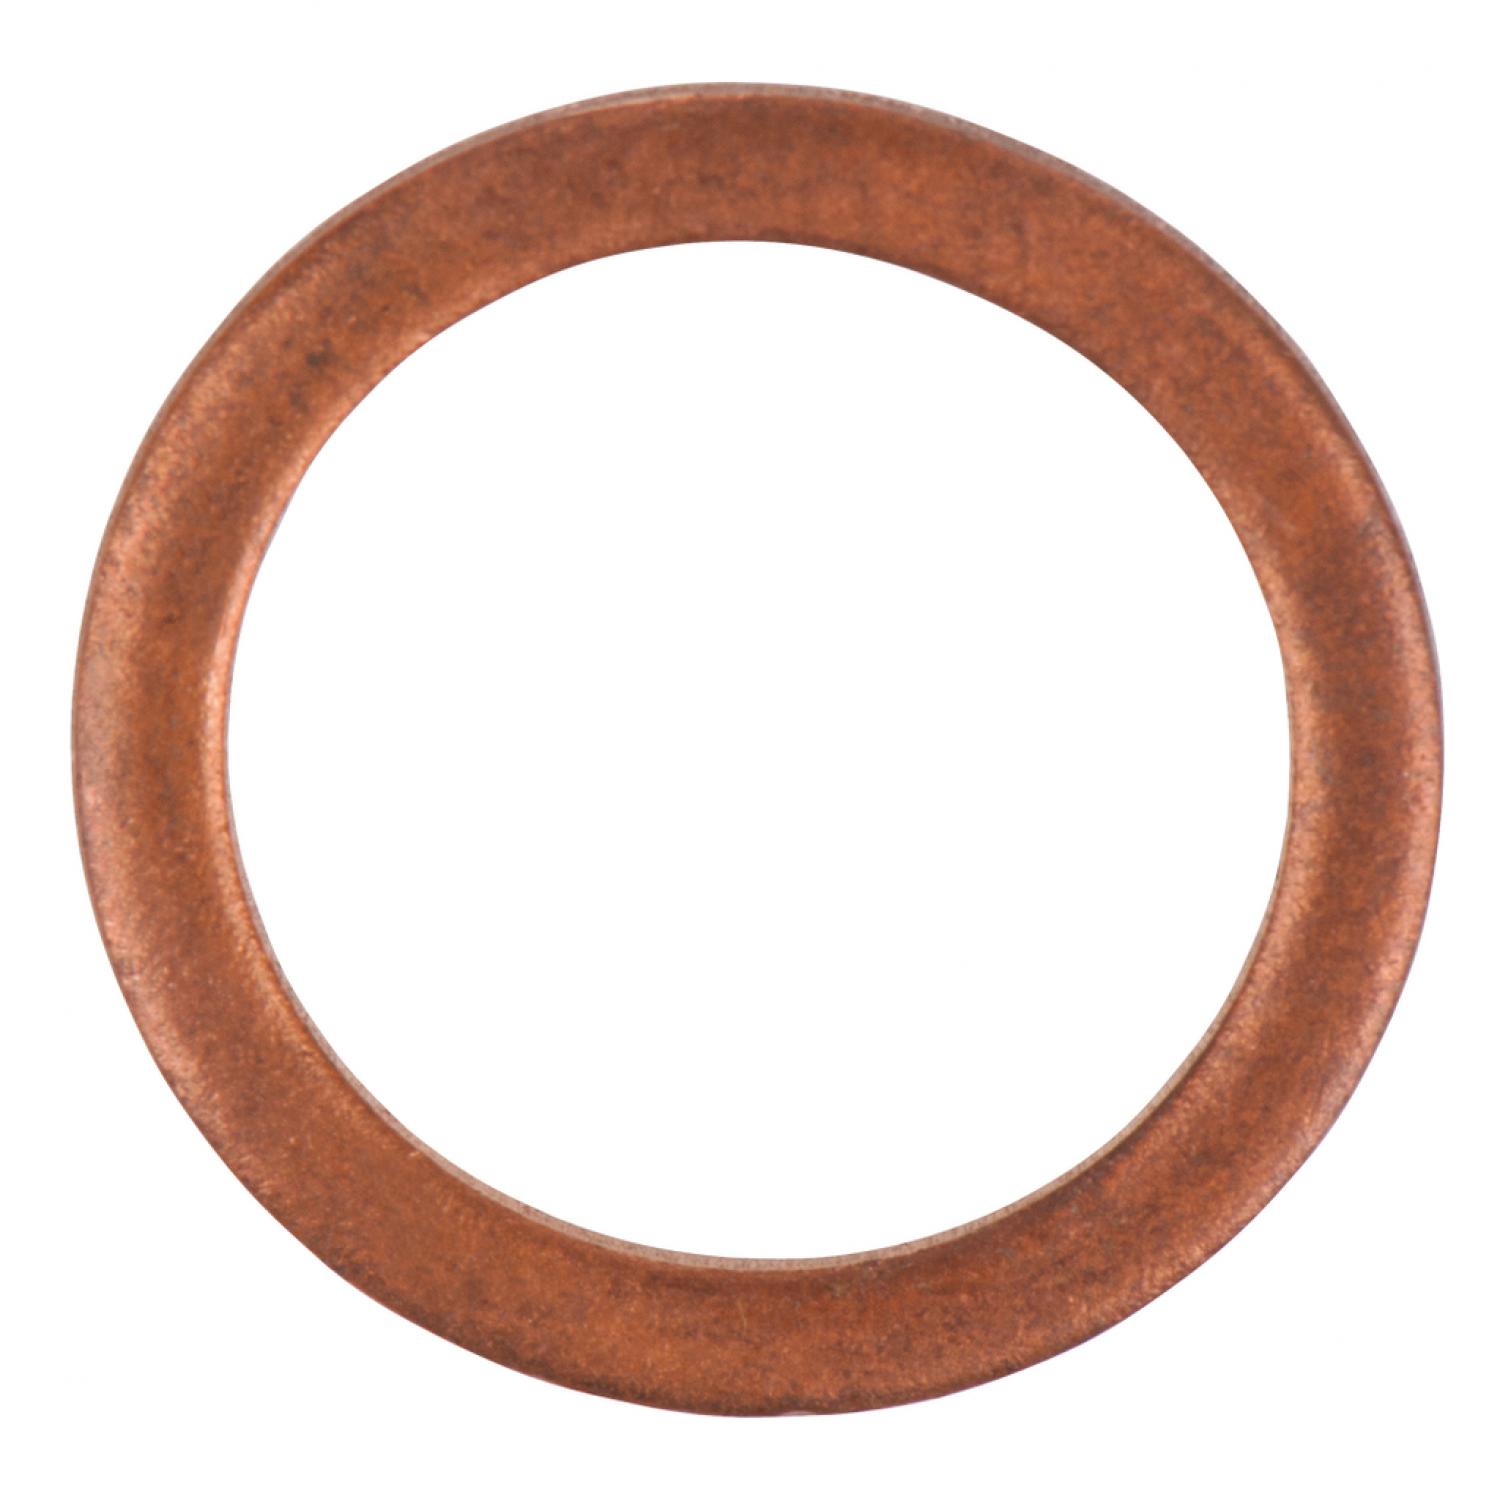 Уплотнительное кольцо, медное, внешний Ø 16 мм, внутренний Ø 12 мм, 10 шт в упаковке